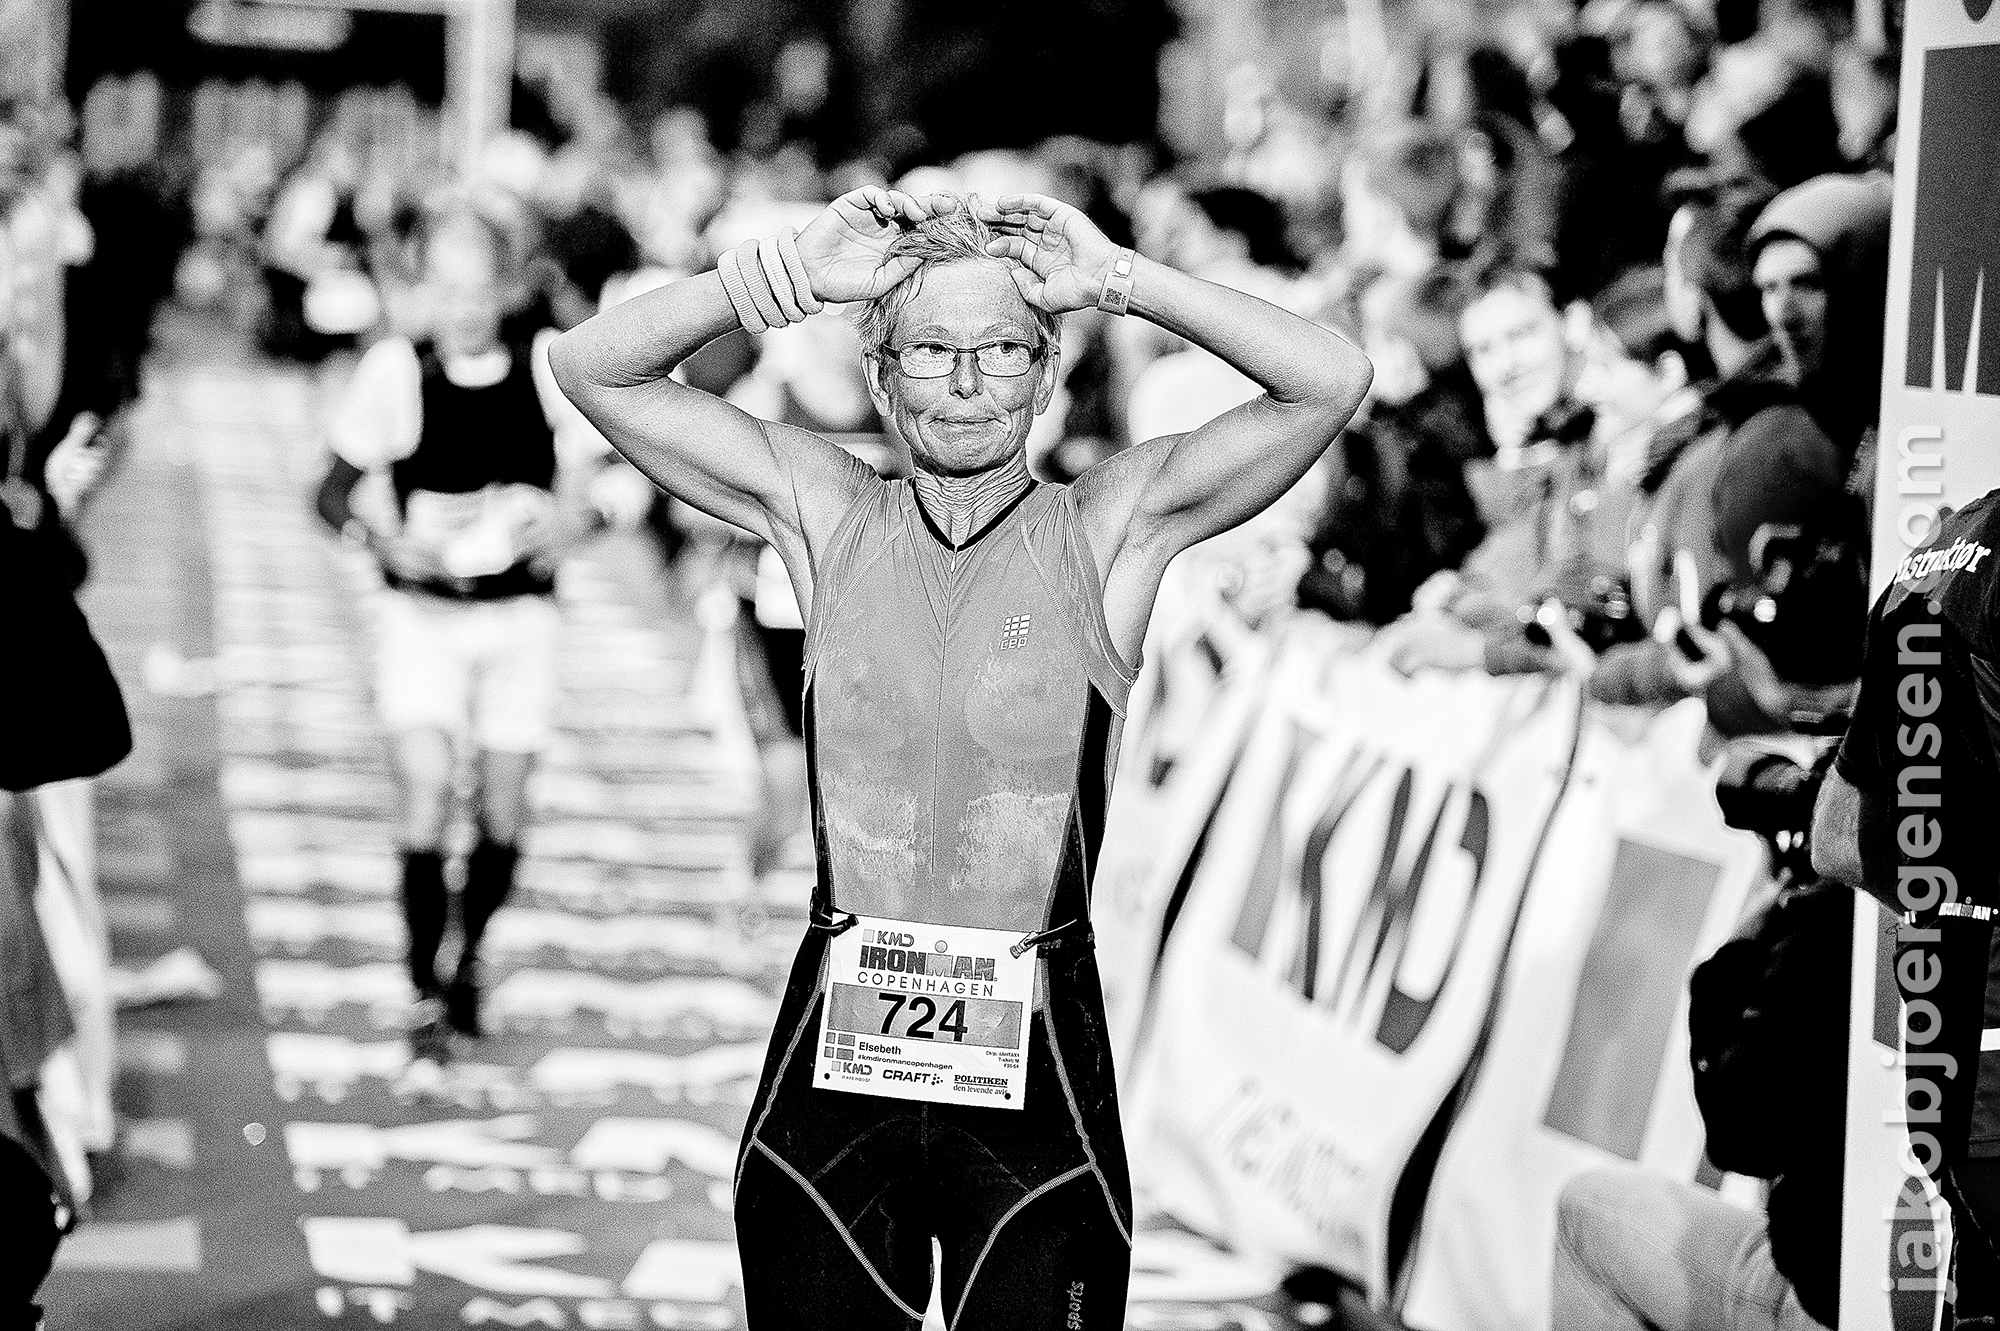 24-08-14_KMD Ironman Copenhagen 2014_0017.JPG